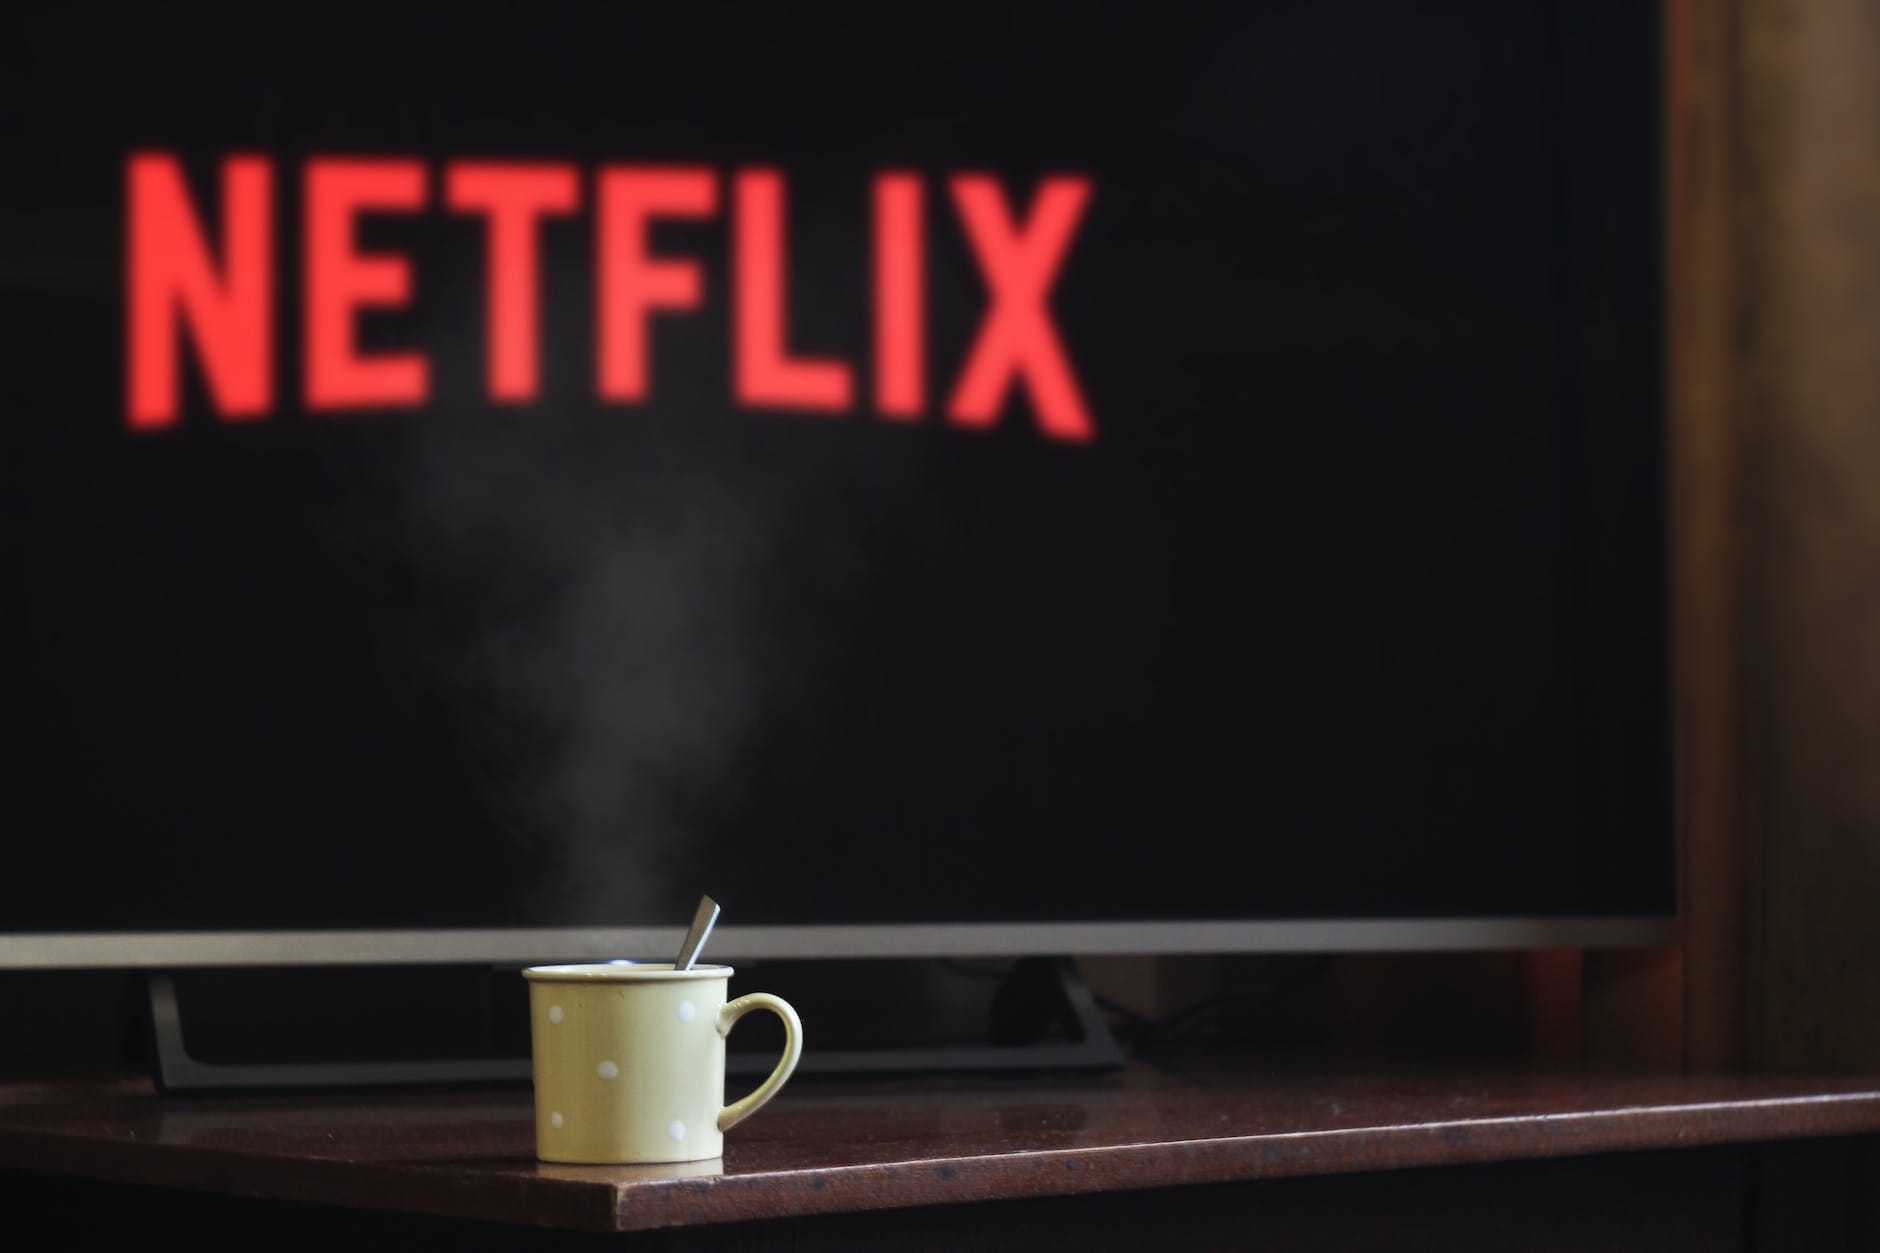 Cómo eliminar cuenta de Netflix - photo of cup near flat screen television